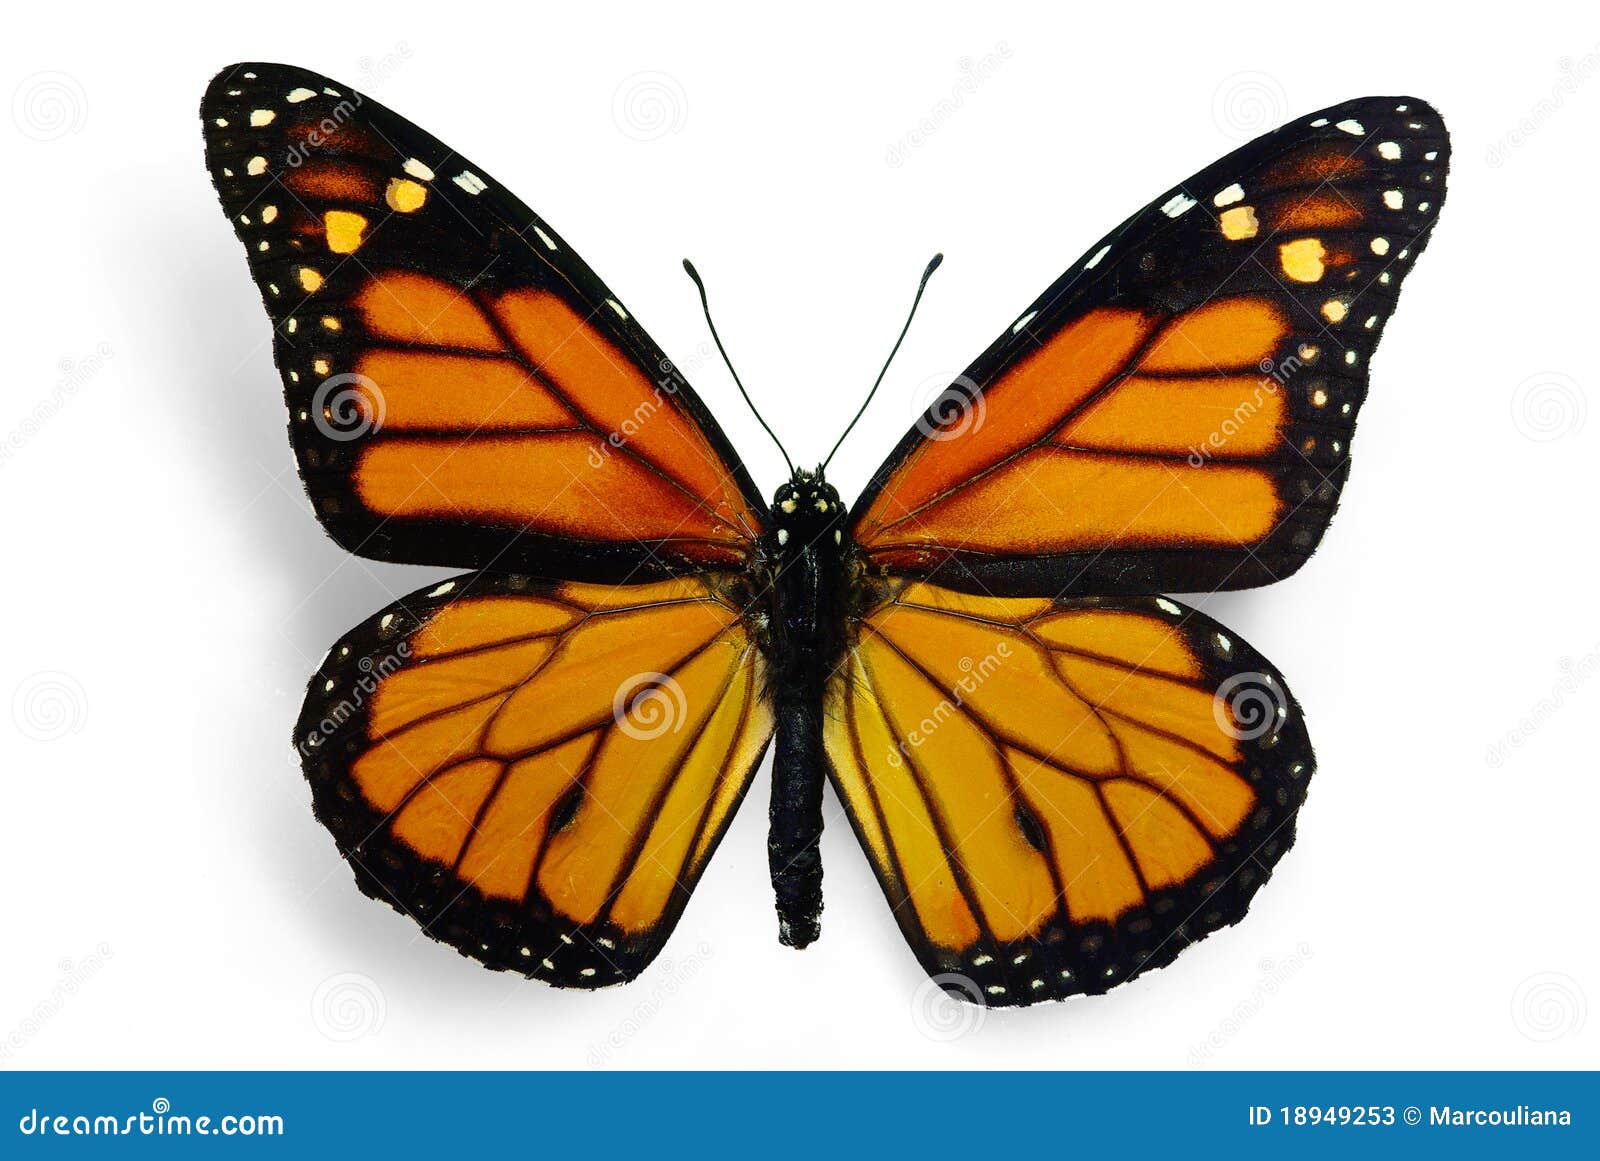 monarch (danaus plexippus)